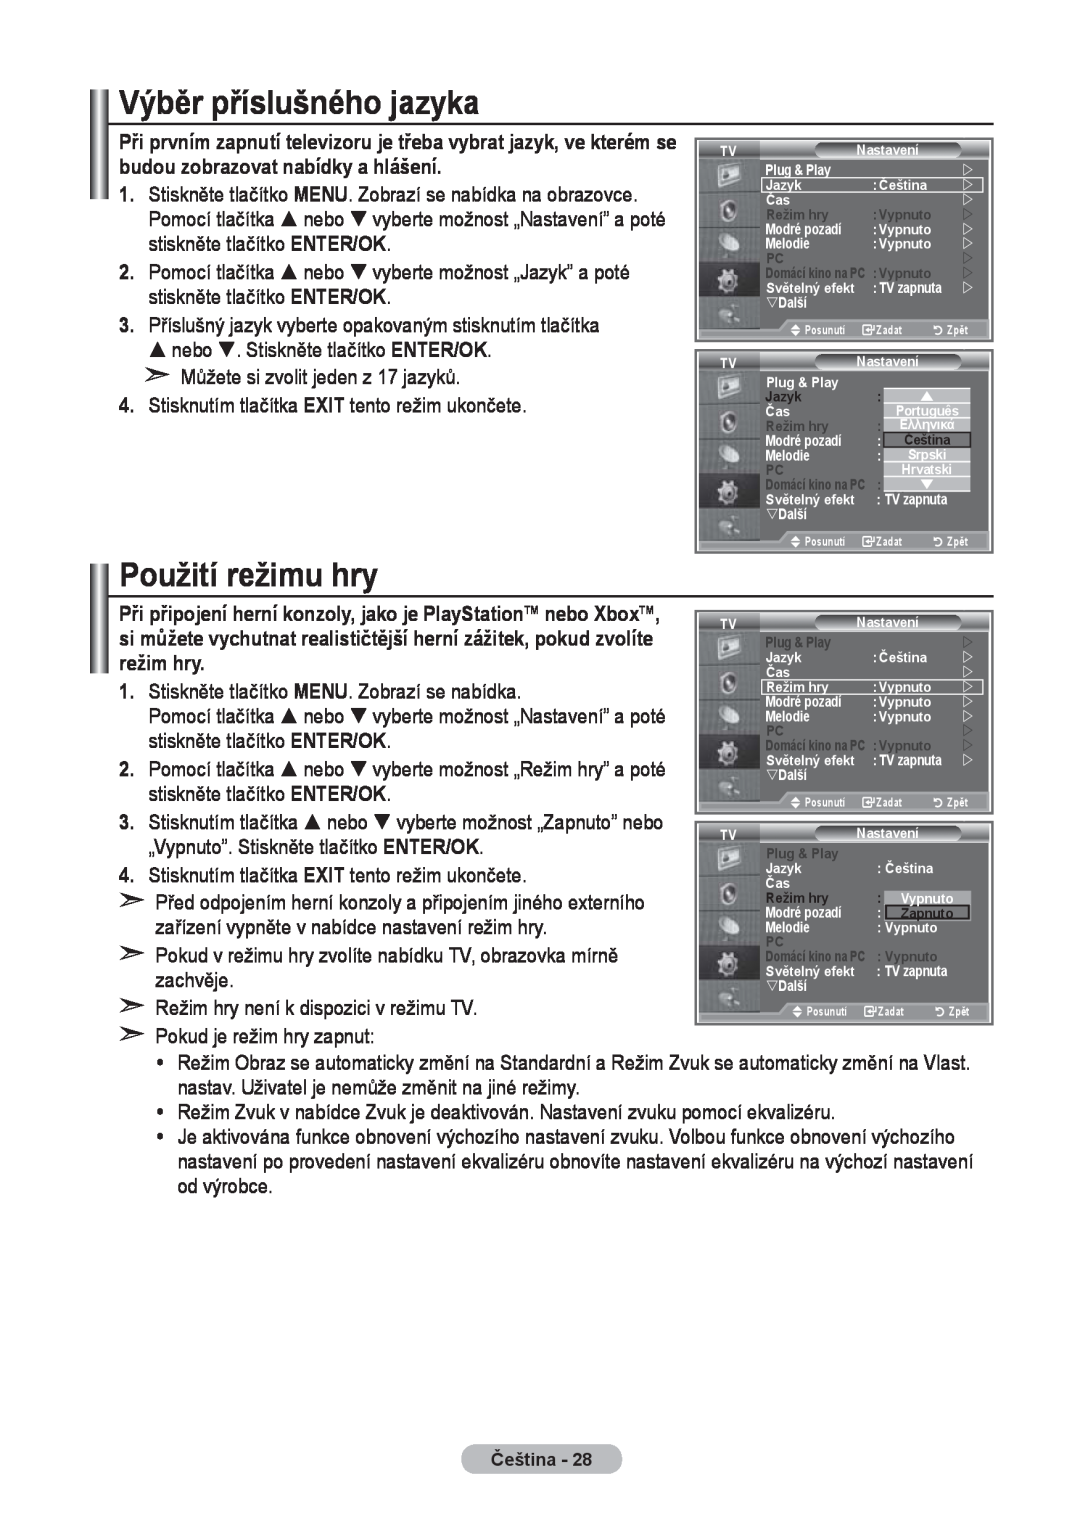 Samsung LE40R8 Výběr příslušného jazyka, Použití režimu hry, režim hry, „Vypnuto”. Stiskněte tlačítko ENTER/OK, zachvěje 